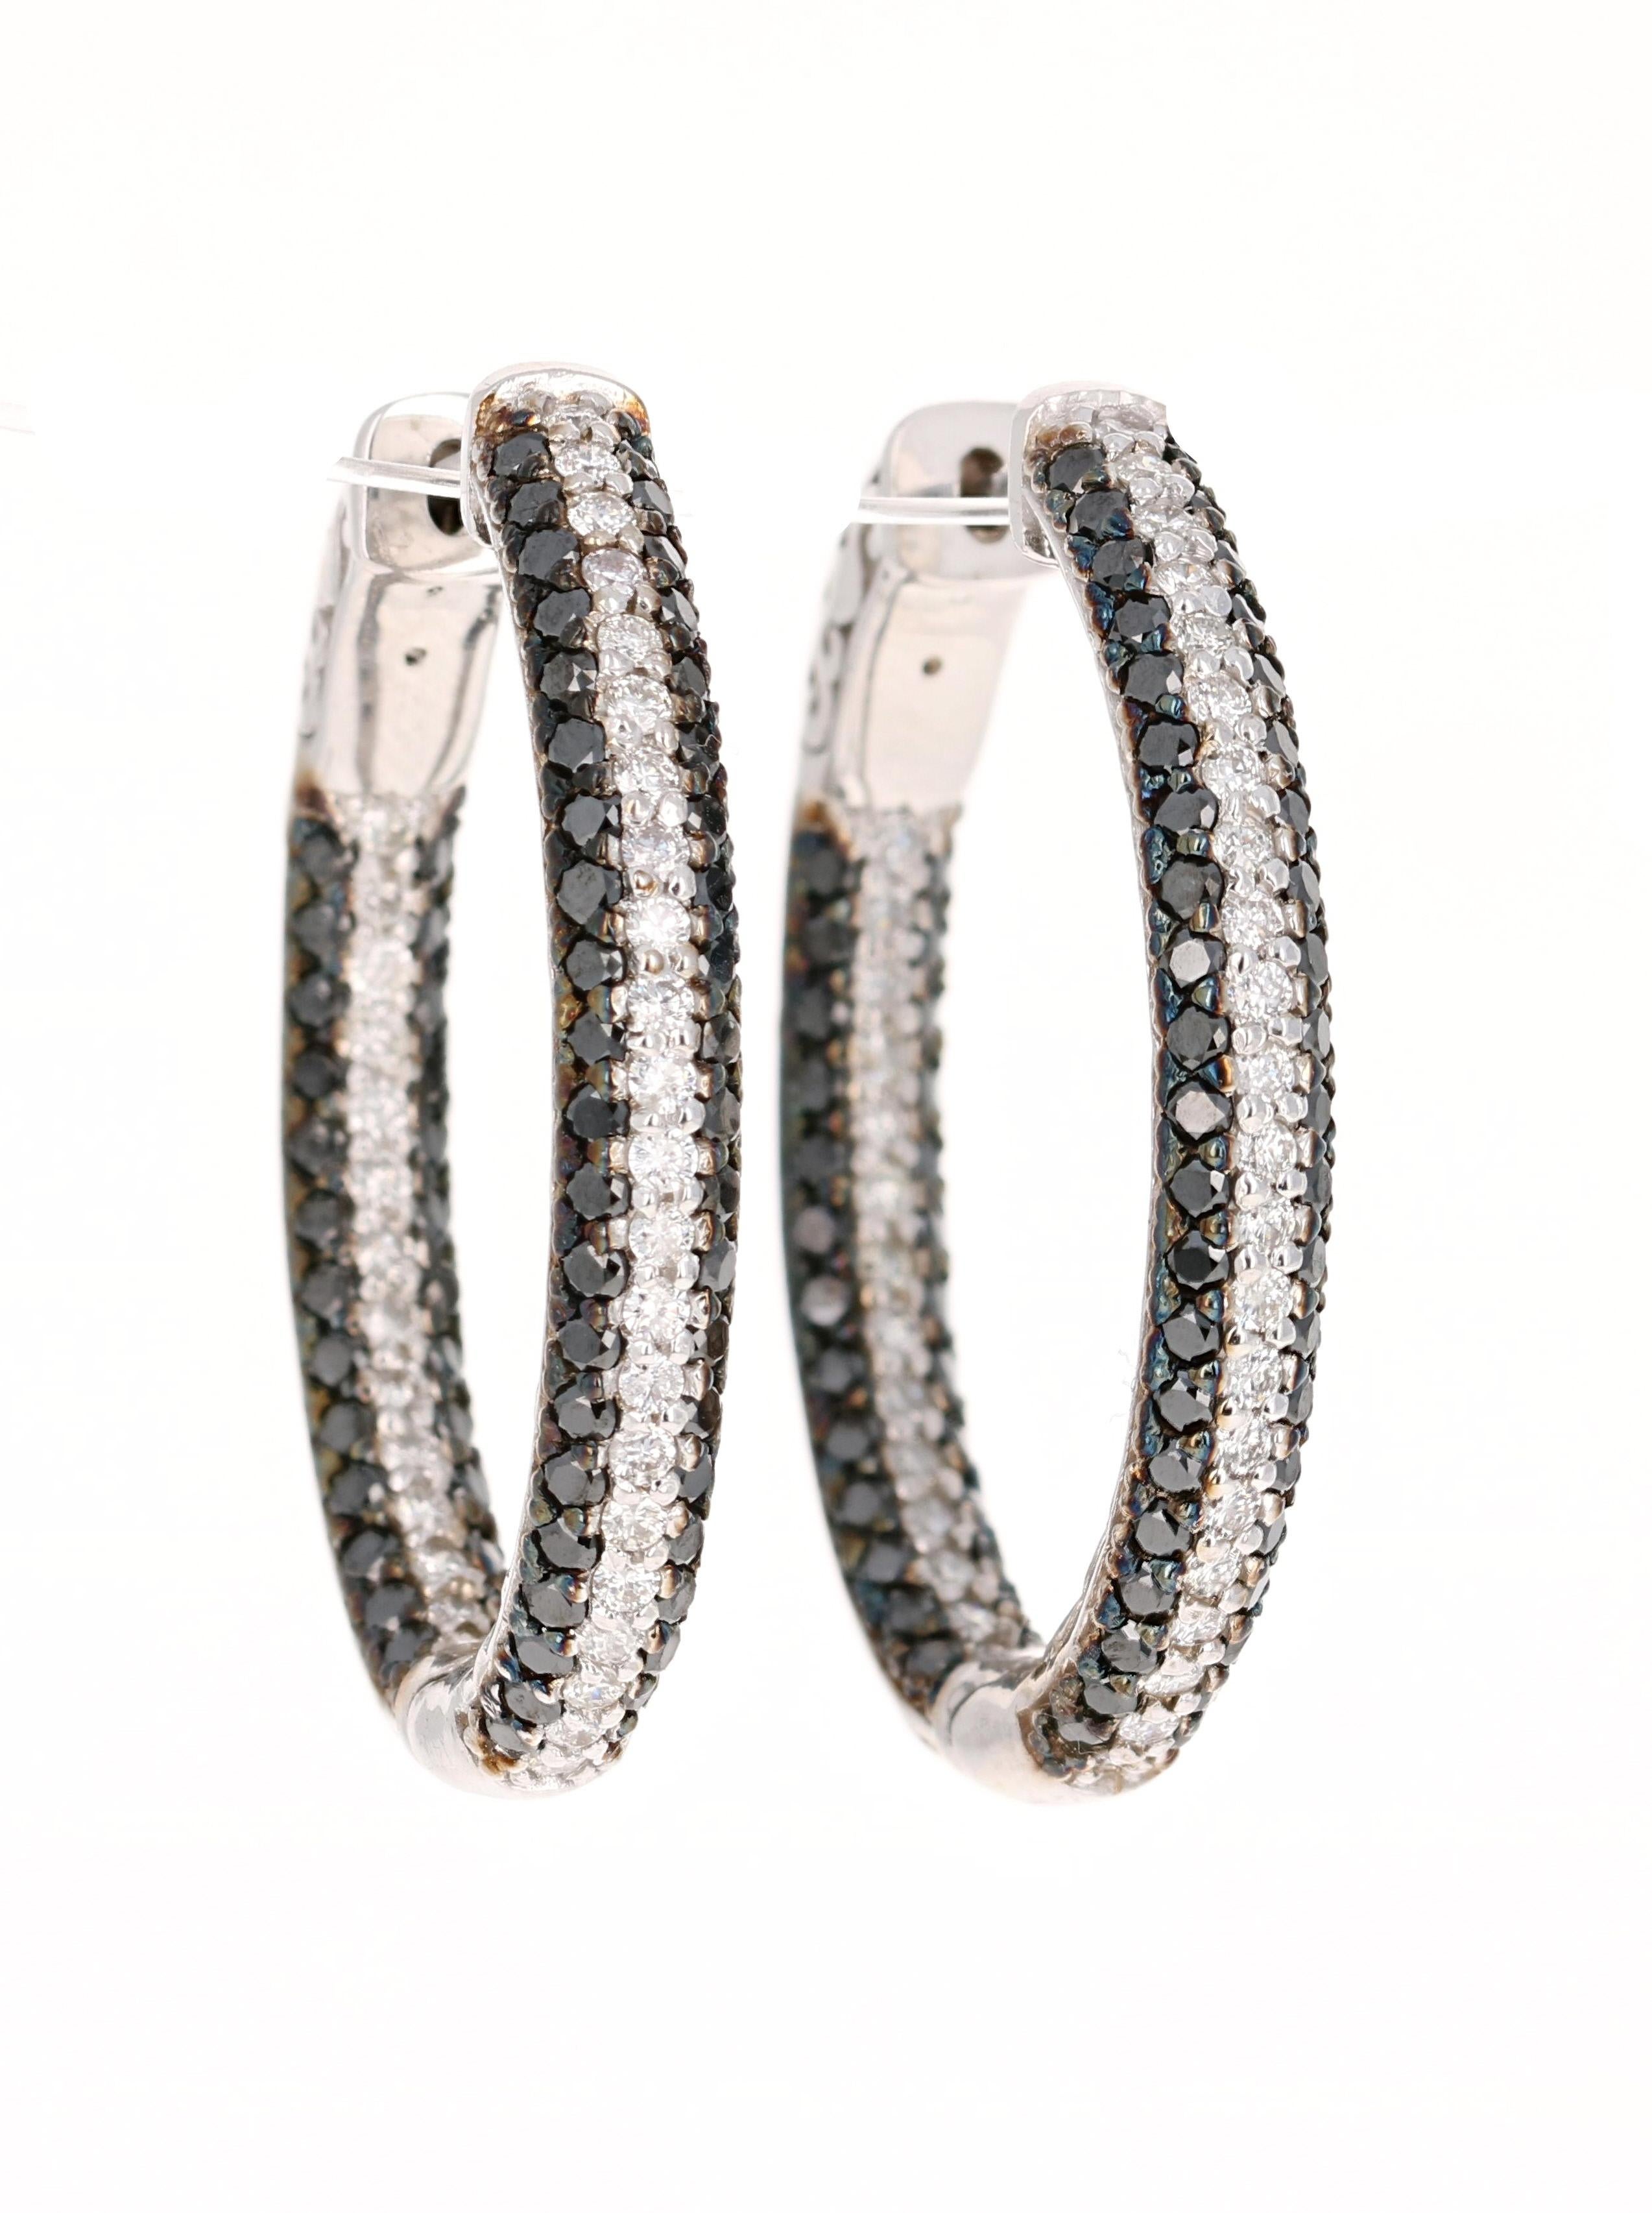 Diese Reif-Ohrringe haben 136 schwarze Diamanten im Rundschliff mit einem Gewicht von 2,21 Karat und 72 weiße Diamanten im Rundschliff mit einem Gewicht von 1,00 Karat. Das Gesamtkaratgewicht der Ohrringe beträgt 3.21 Karat. 

Sie sind aus 14 Karat